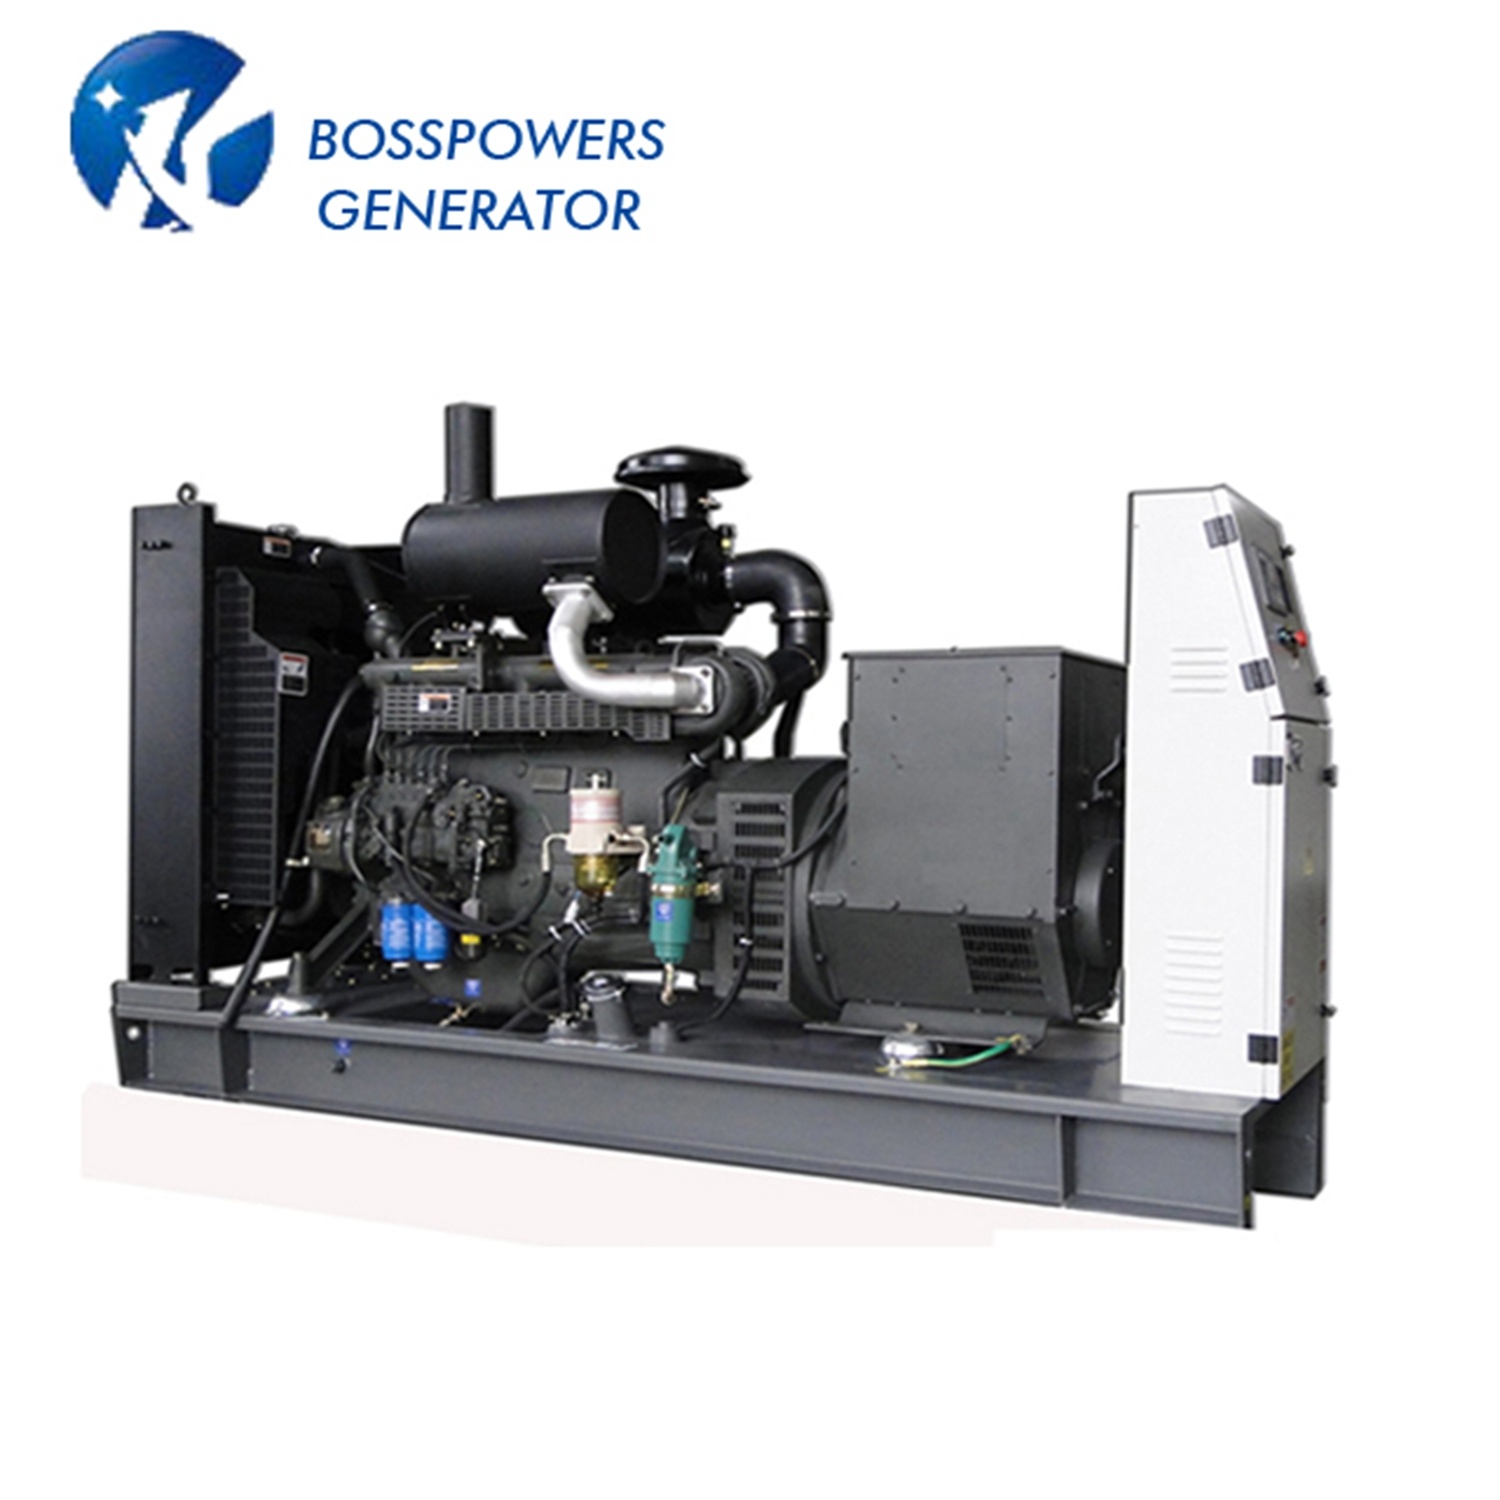 Electric Start 275kw 60Hz Doosan Stamford Open Type Diesel Generator with Deepsea Controller